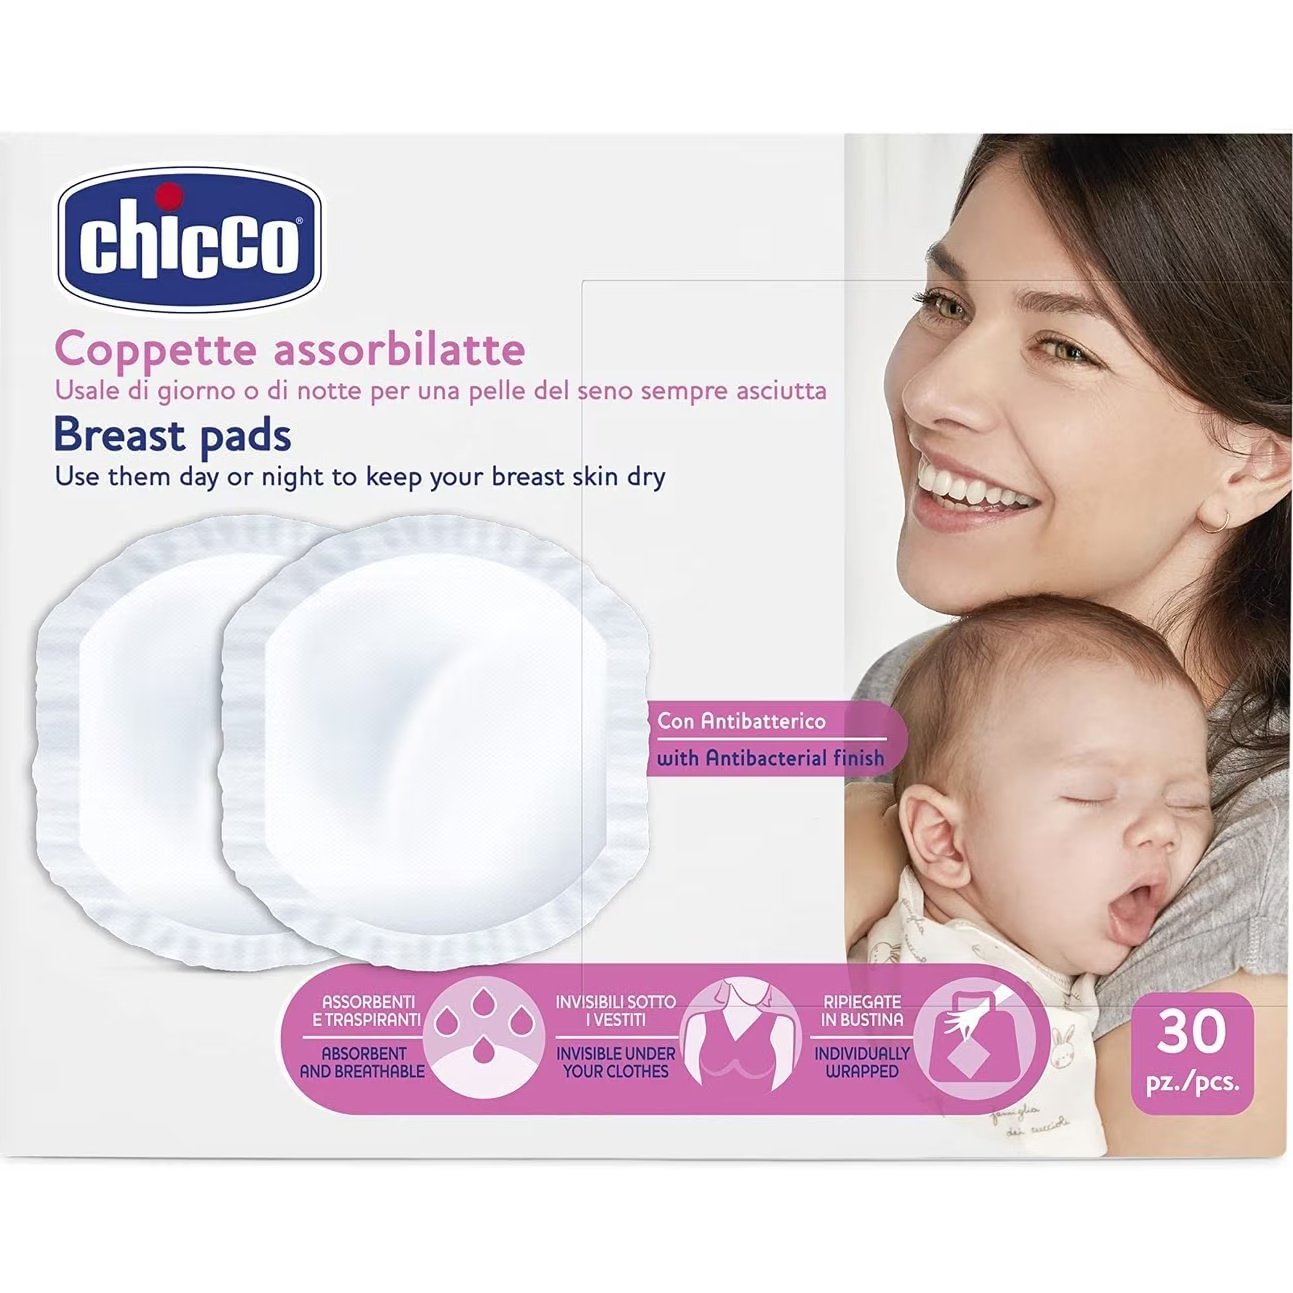 Chicco Breast Pads with Antibacterial Fabric Αντιβακτηριδιακά Επιθέματα Στήθους για την Αντιμετώπιση των Διαρροών του Γάλακτος Ανάμεσα στα Γεύματα 30 Τεμάχια